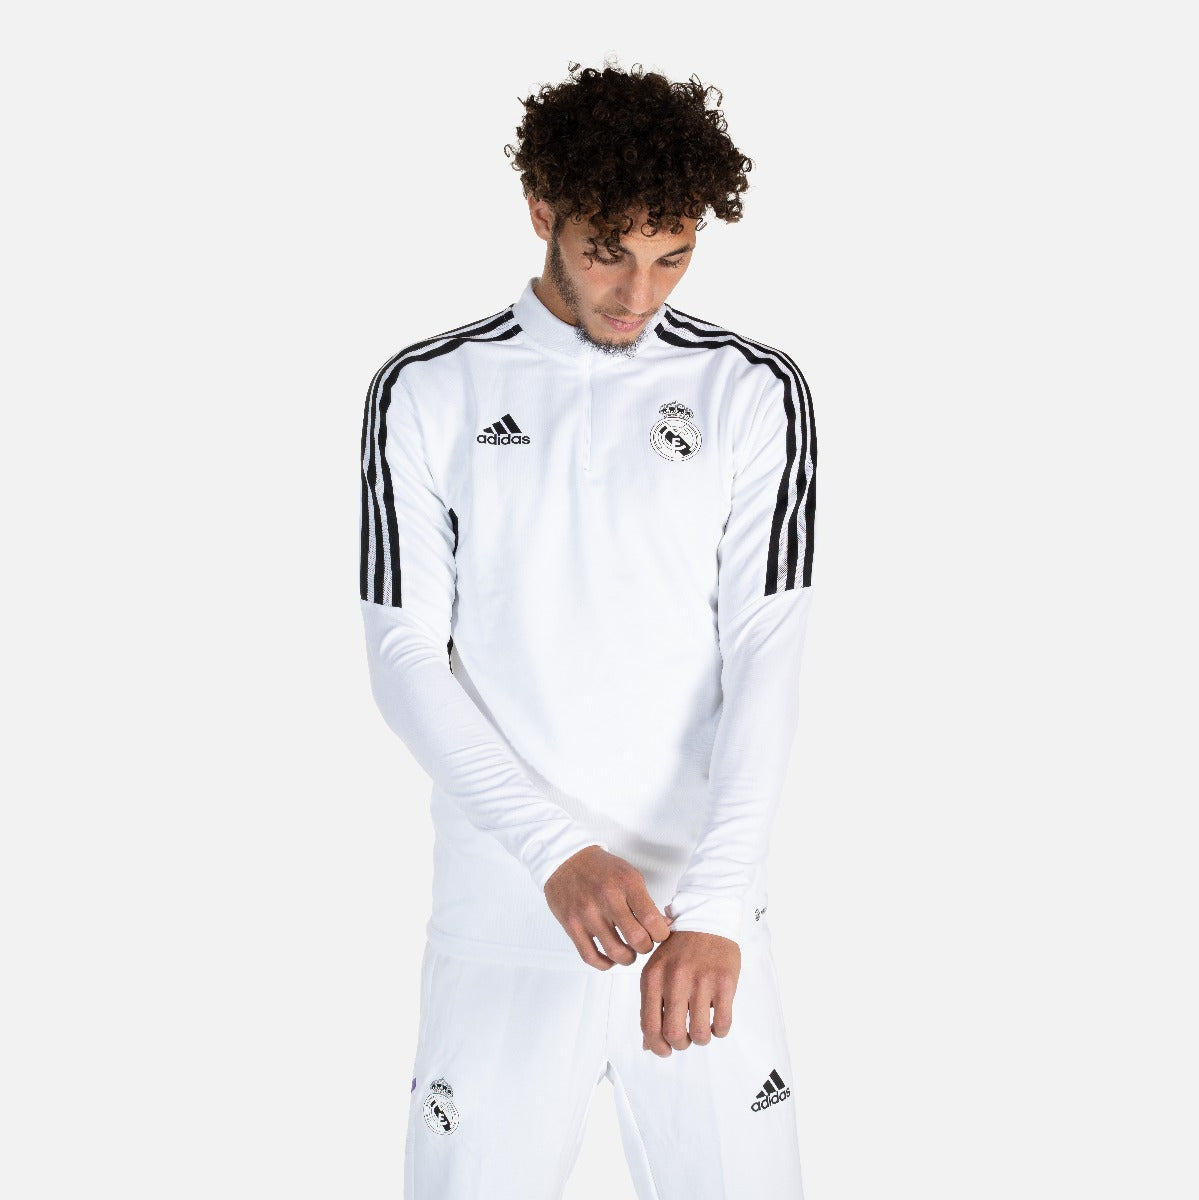 Pantalon de survêtement Real Madrid Condivo 2022/2023 - Noir/Blanc/Vio –  Footkorner